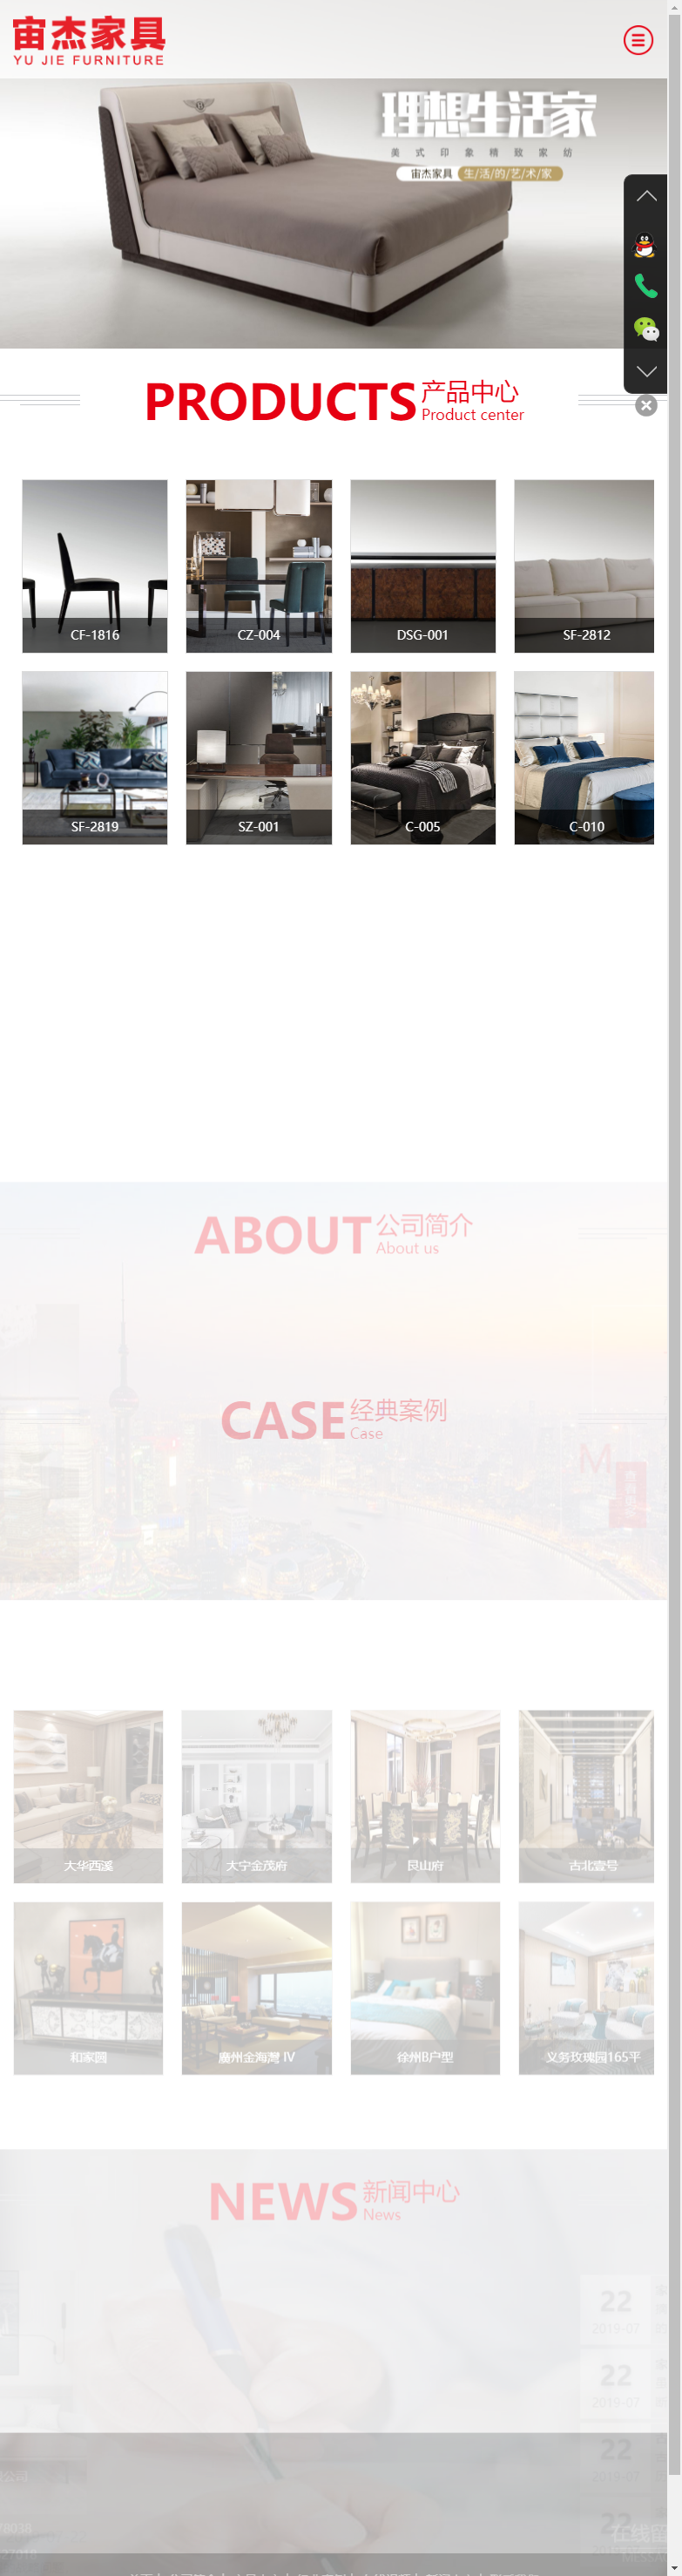 上海宙杰家具有限公司网站案例